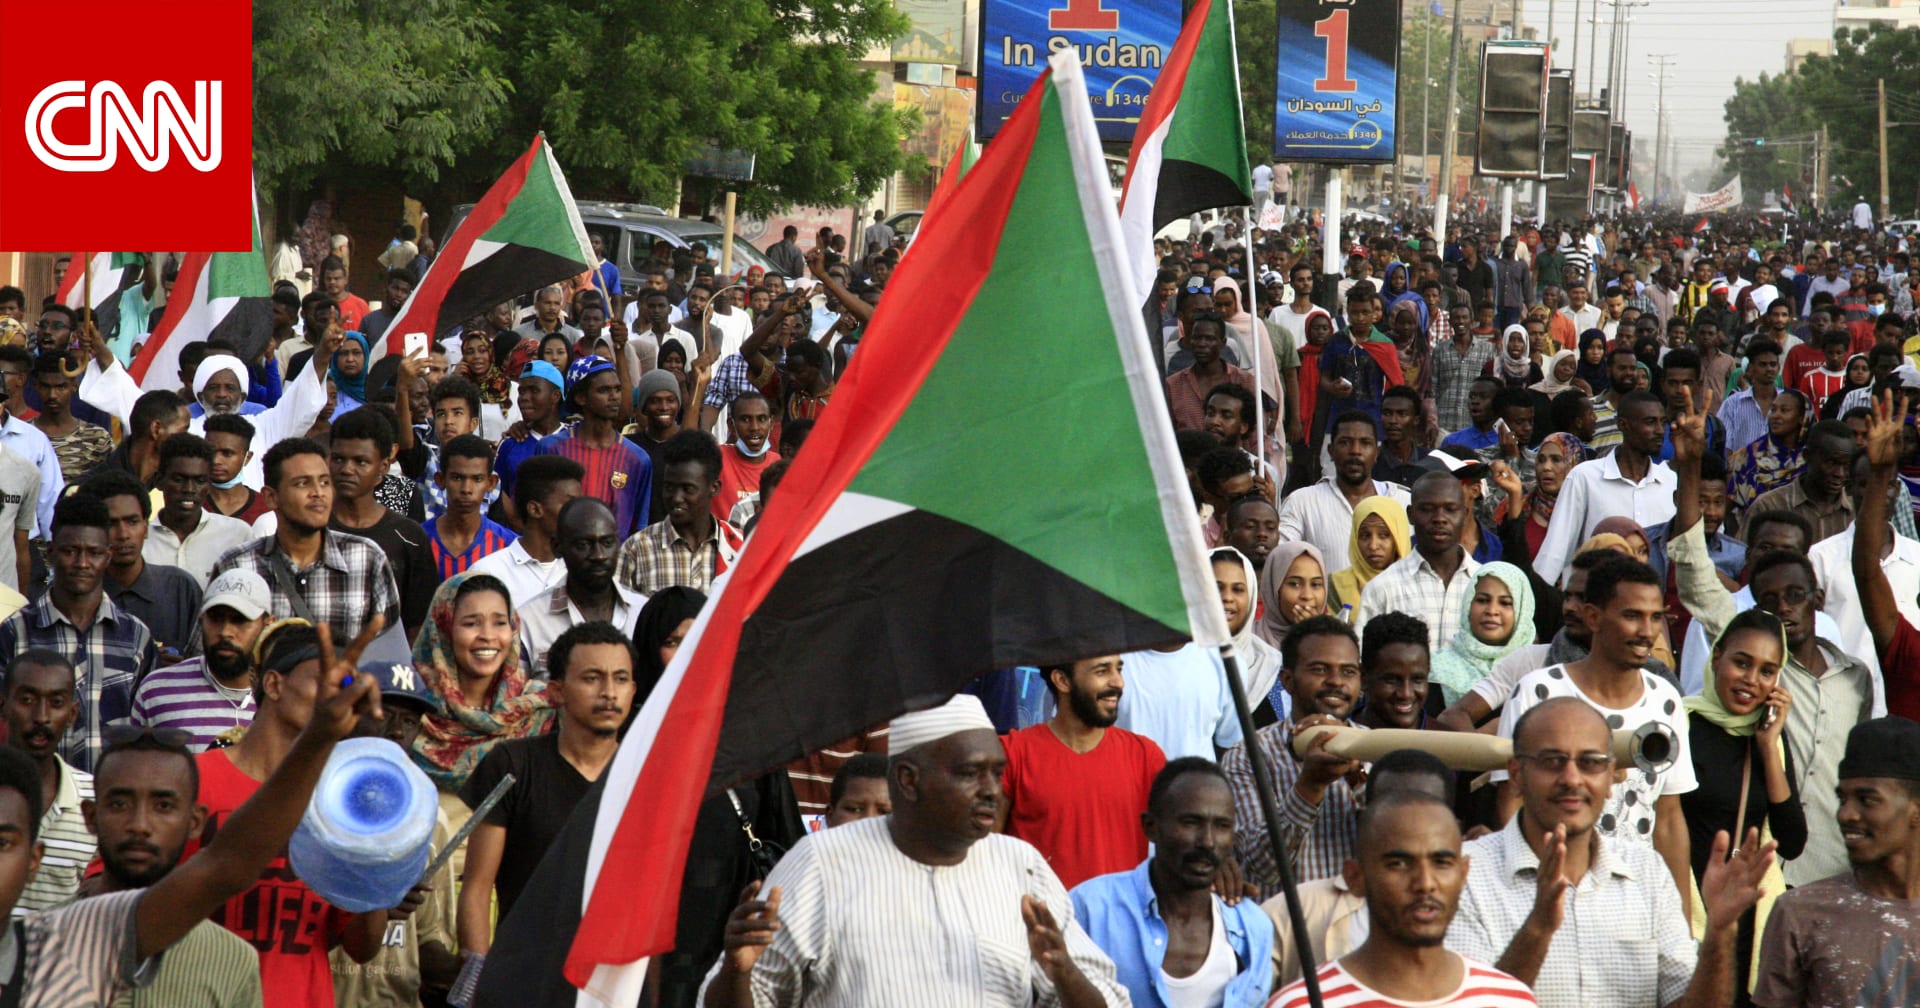 الحرية والتغيير  تدعو للعصيان المدني والإضراب الشامل بجميع أنحاء السودان في 14 يوليو - CNN Arabic